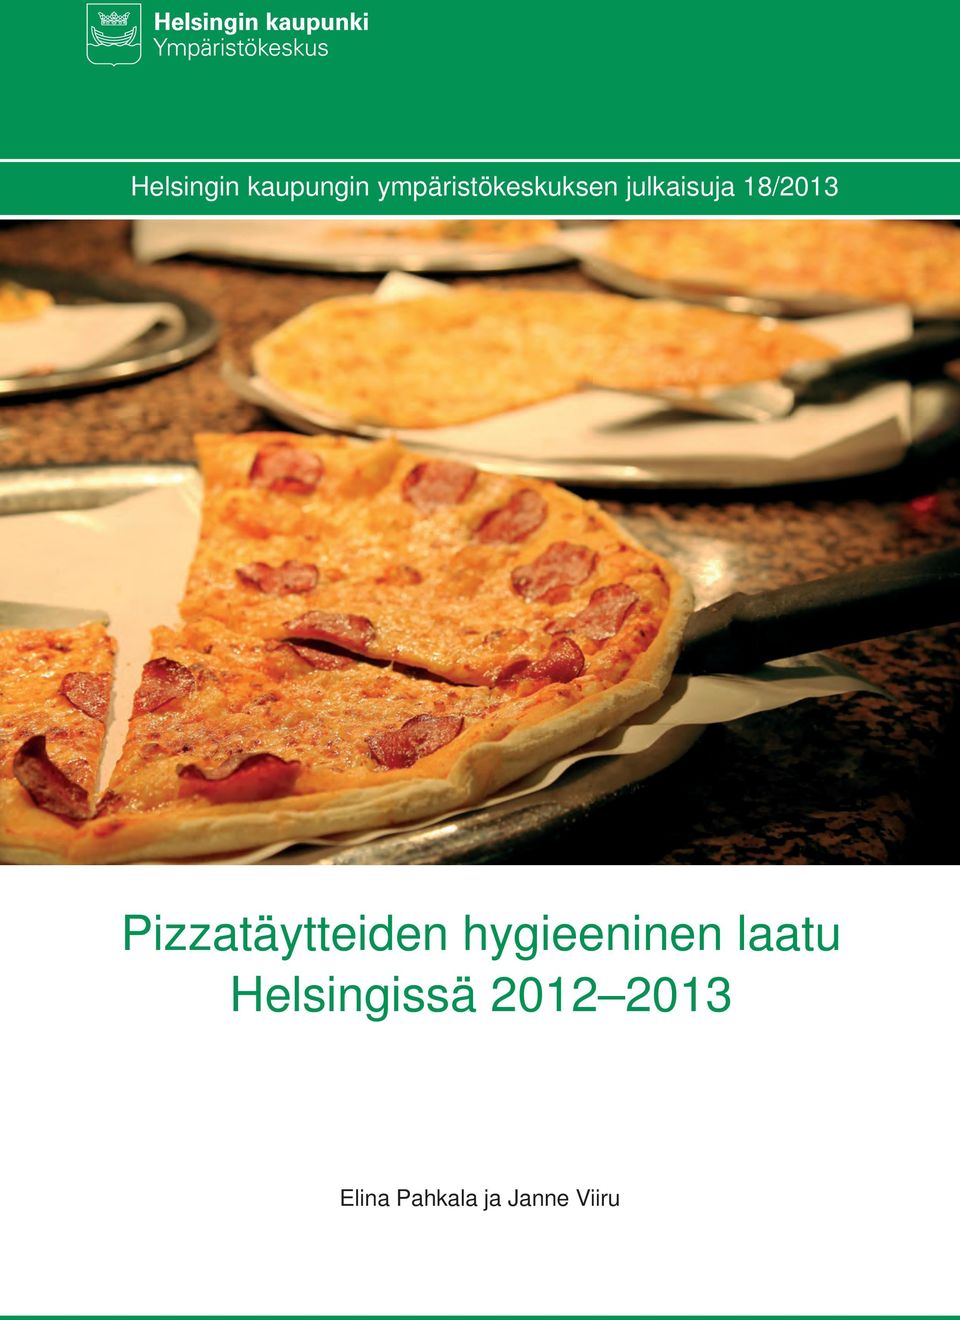 18/2013 Pizzatäytteiden hygieeninen